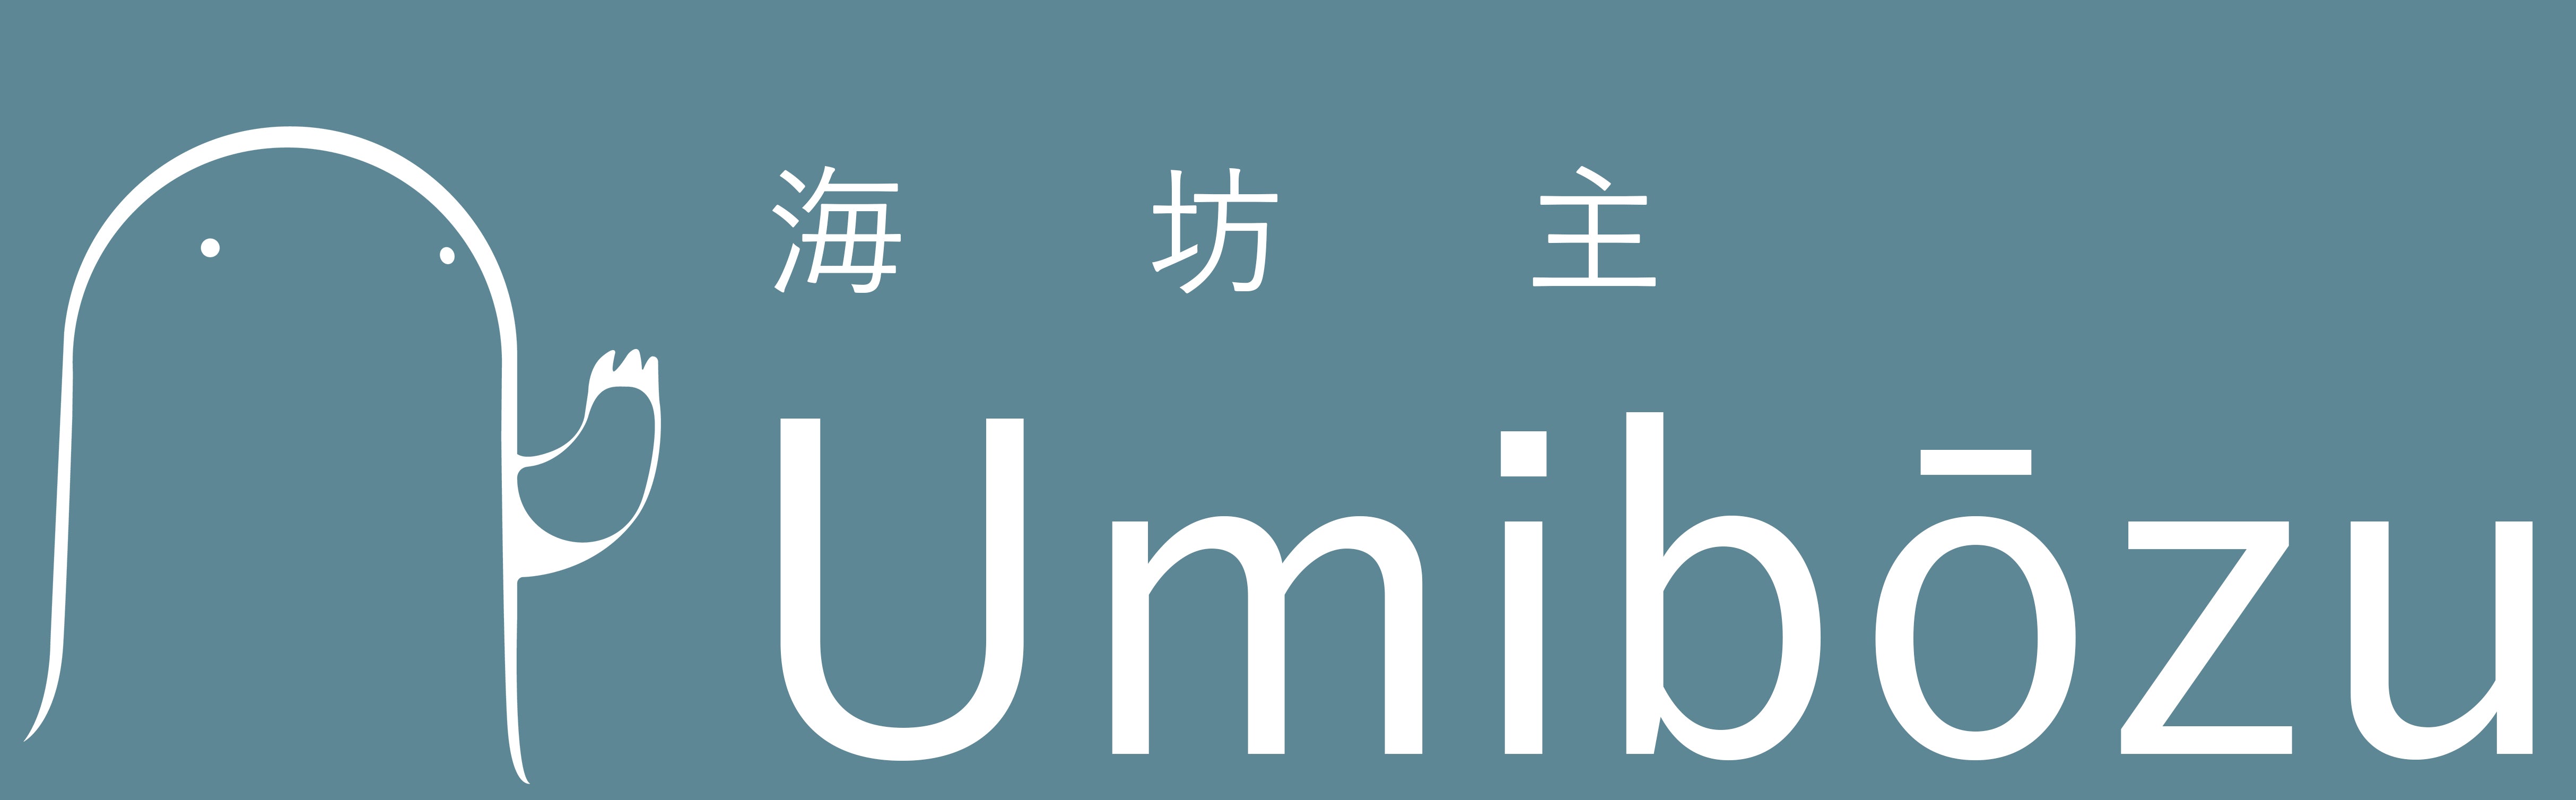 Umibozu-wear